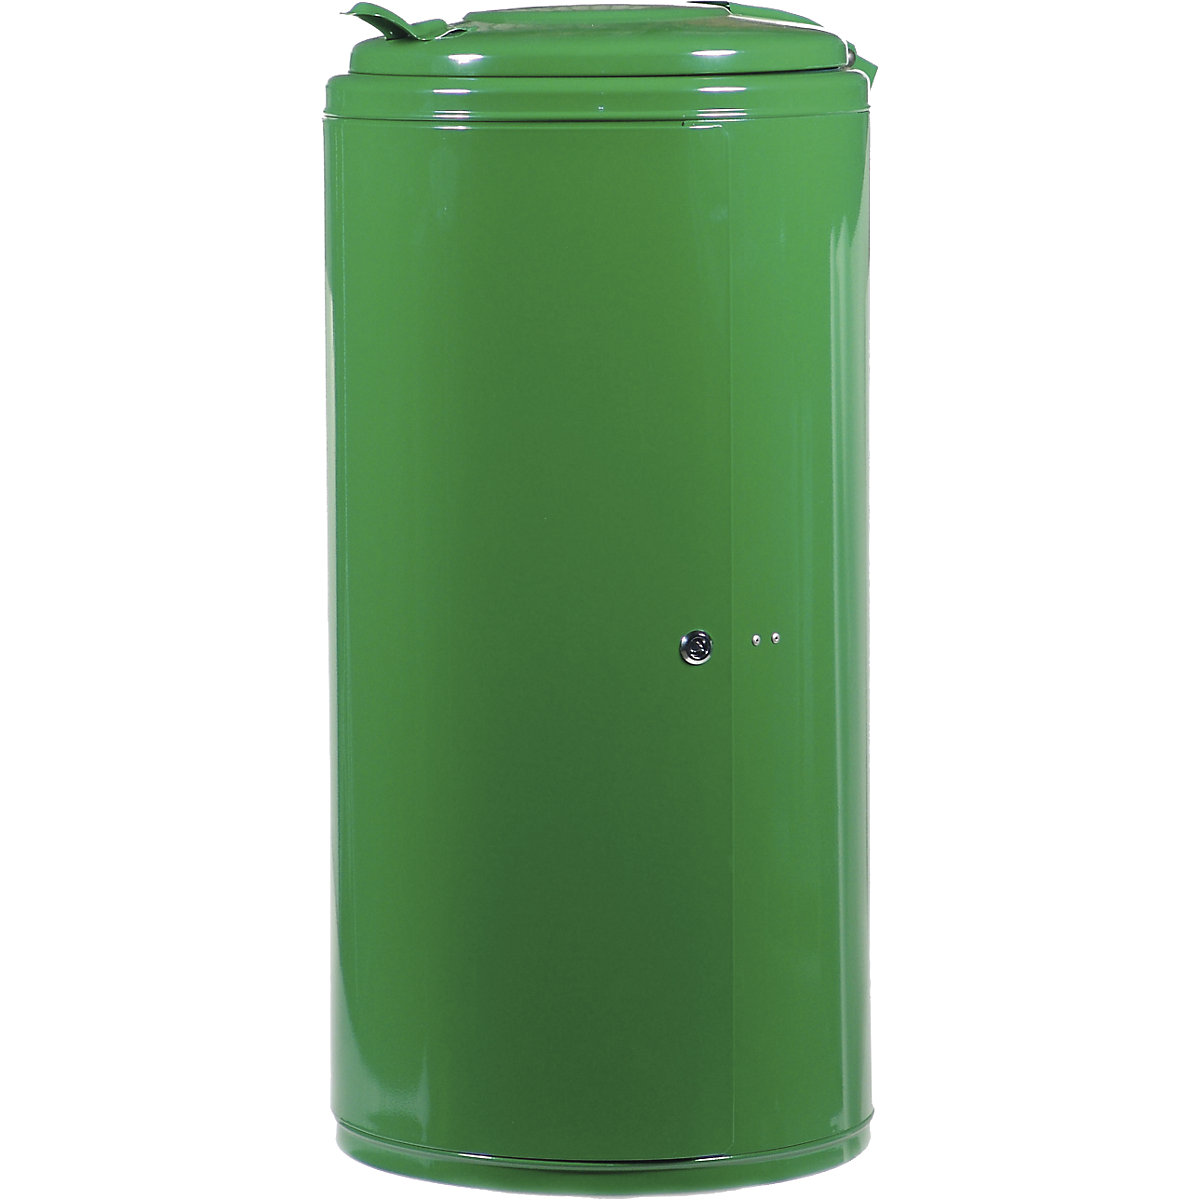 Abfallbehälter, Volumen 120 l, HxBxT 990 x 470 x 535 mm, grün